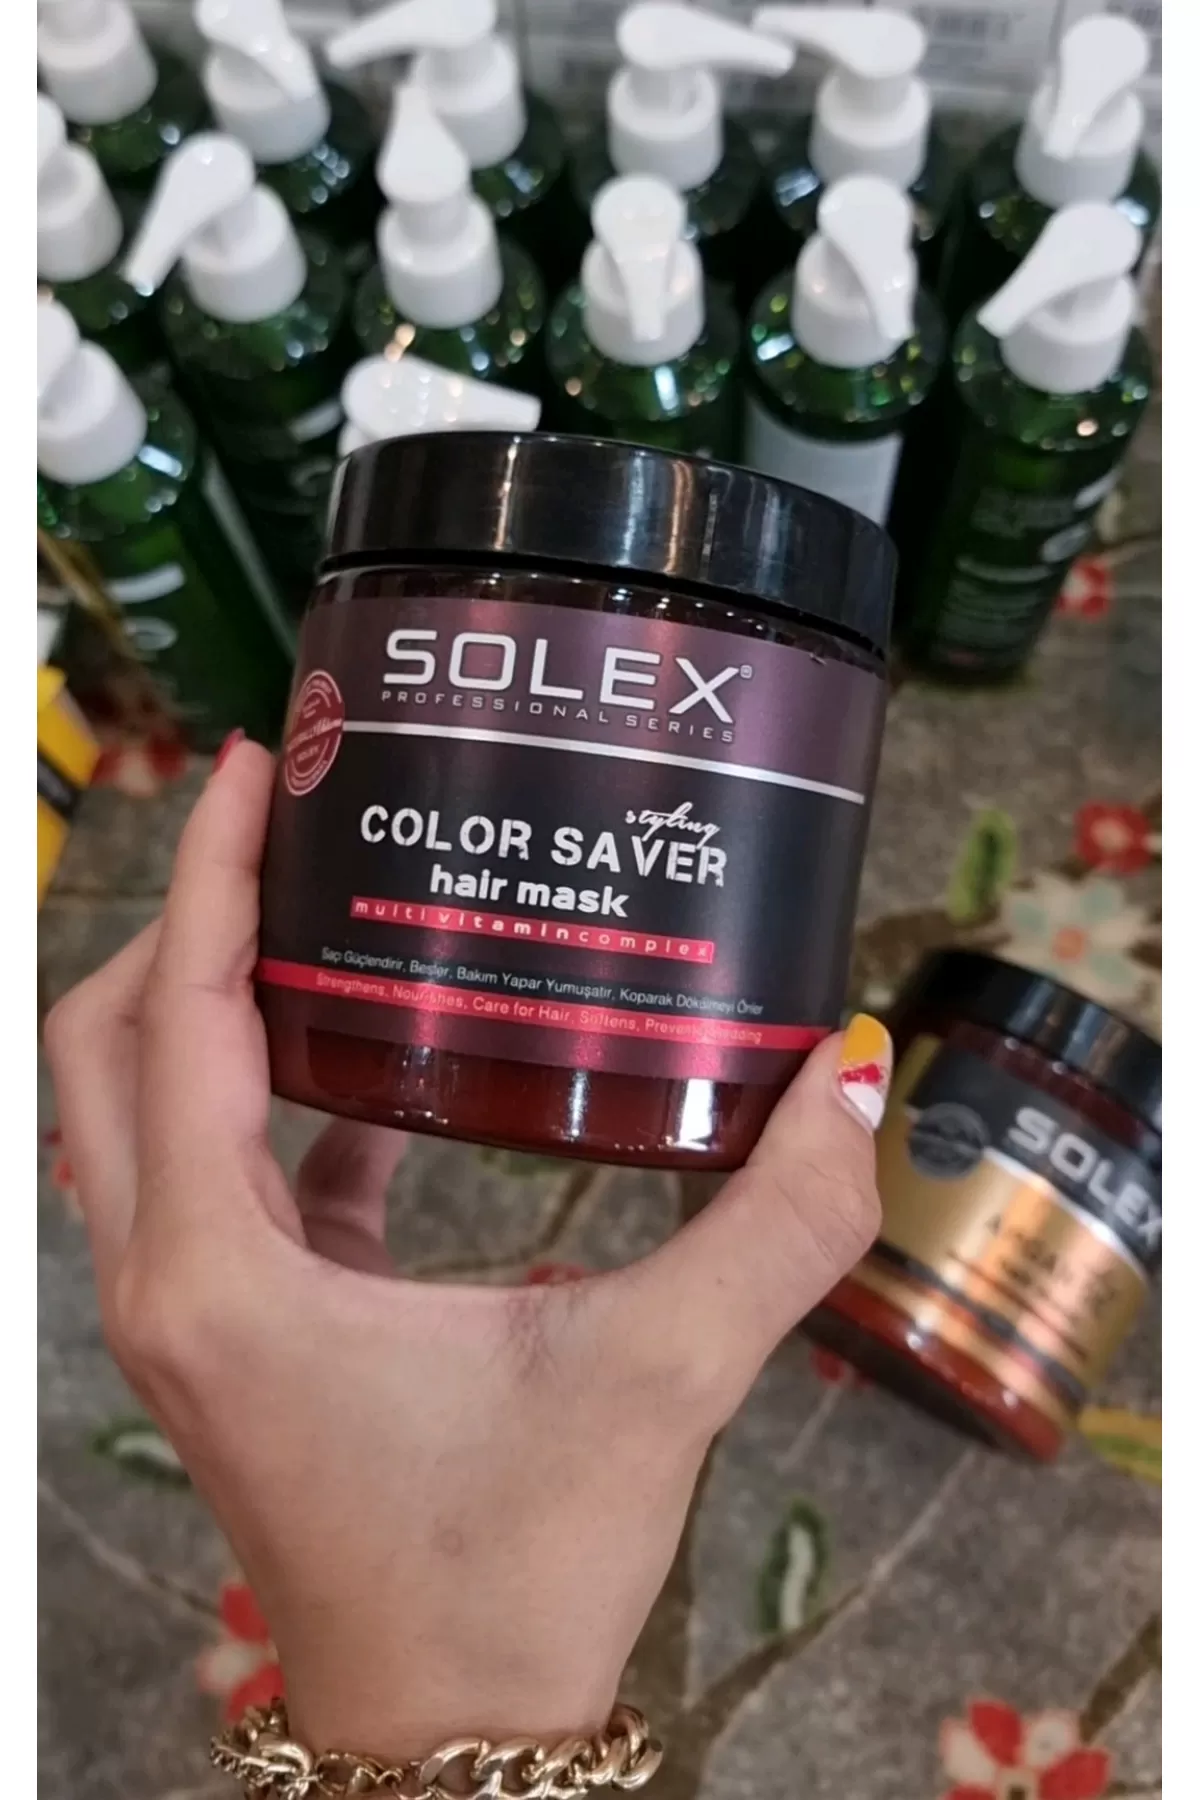 مخصوص موهای رنگ شده محافظت از موهای رنگ شده نرم کننده و آبرسانی مو تغذیه کننده و از بین برنده مو خوره سولکس SOLEX ماسک مو